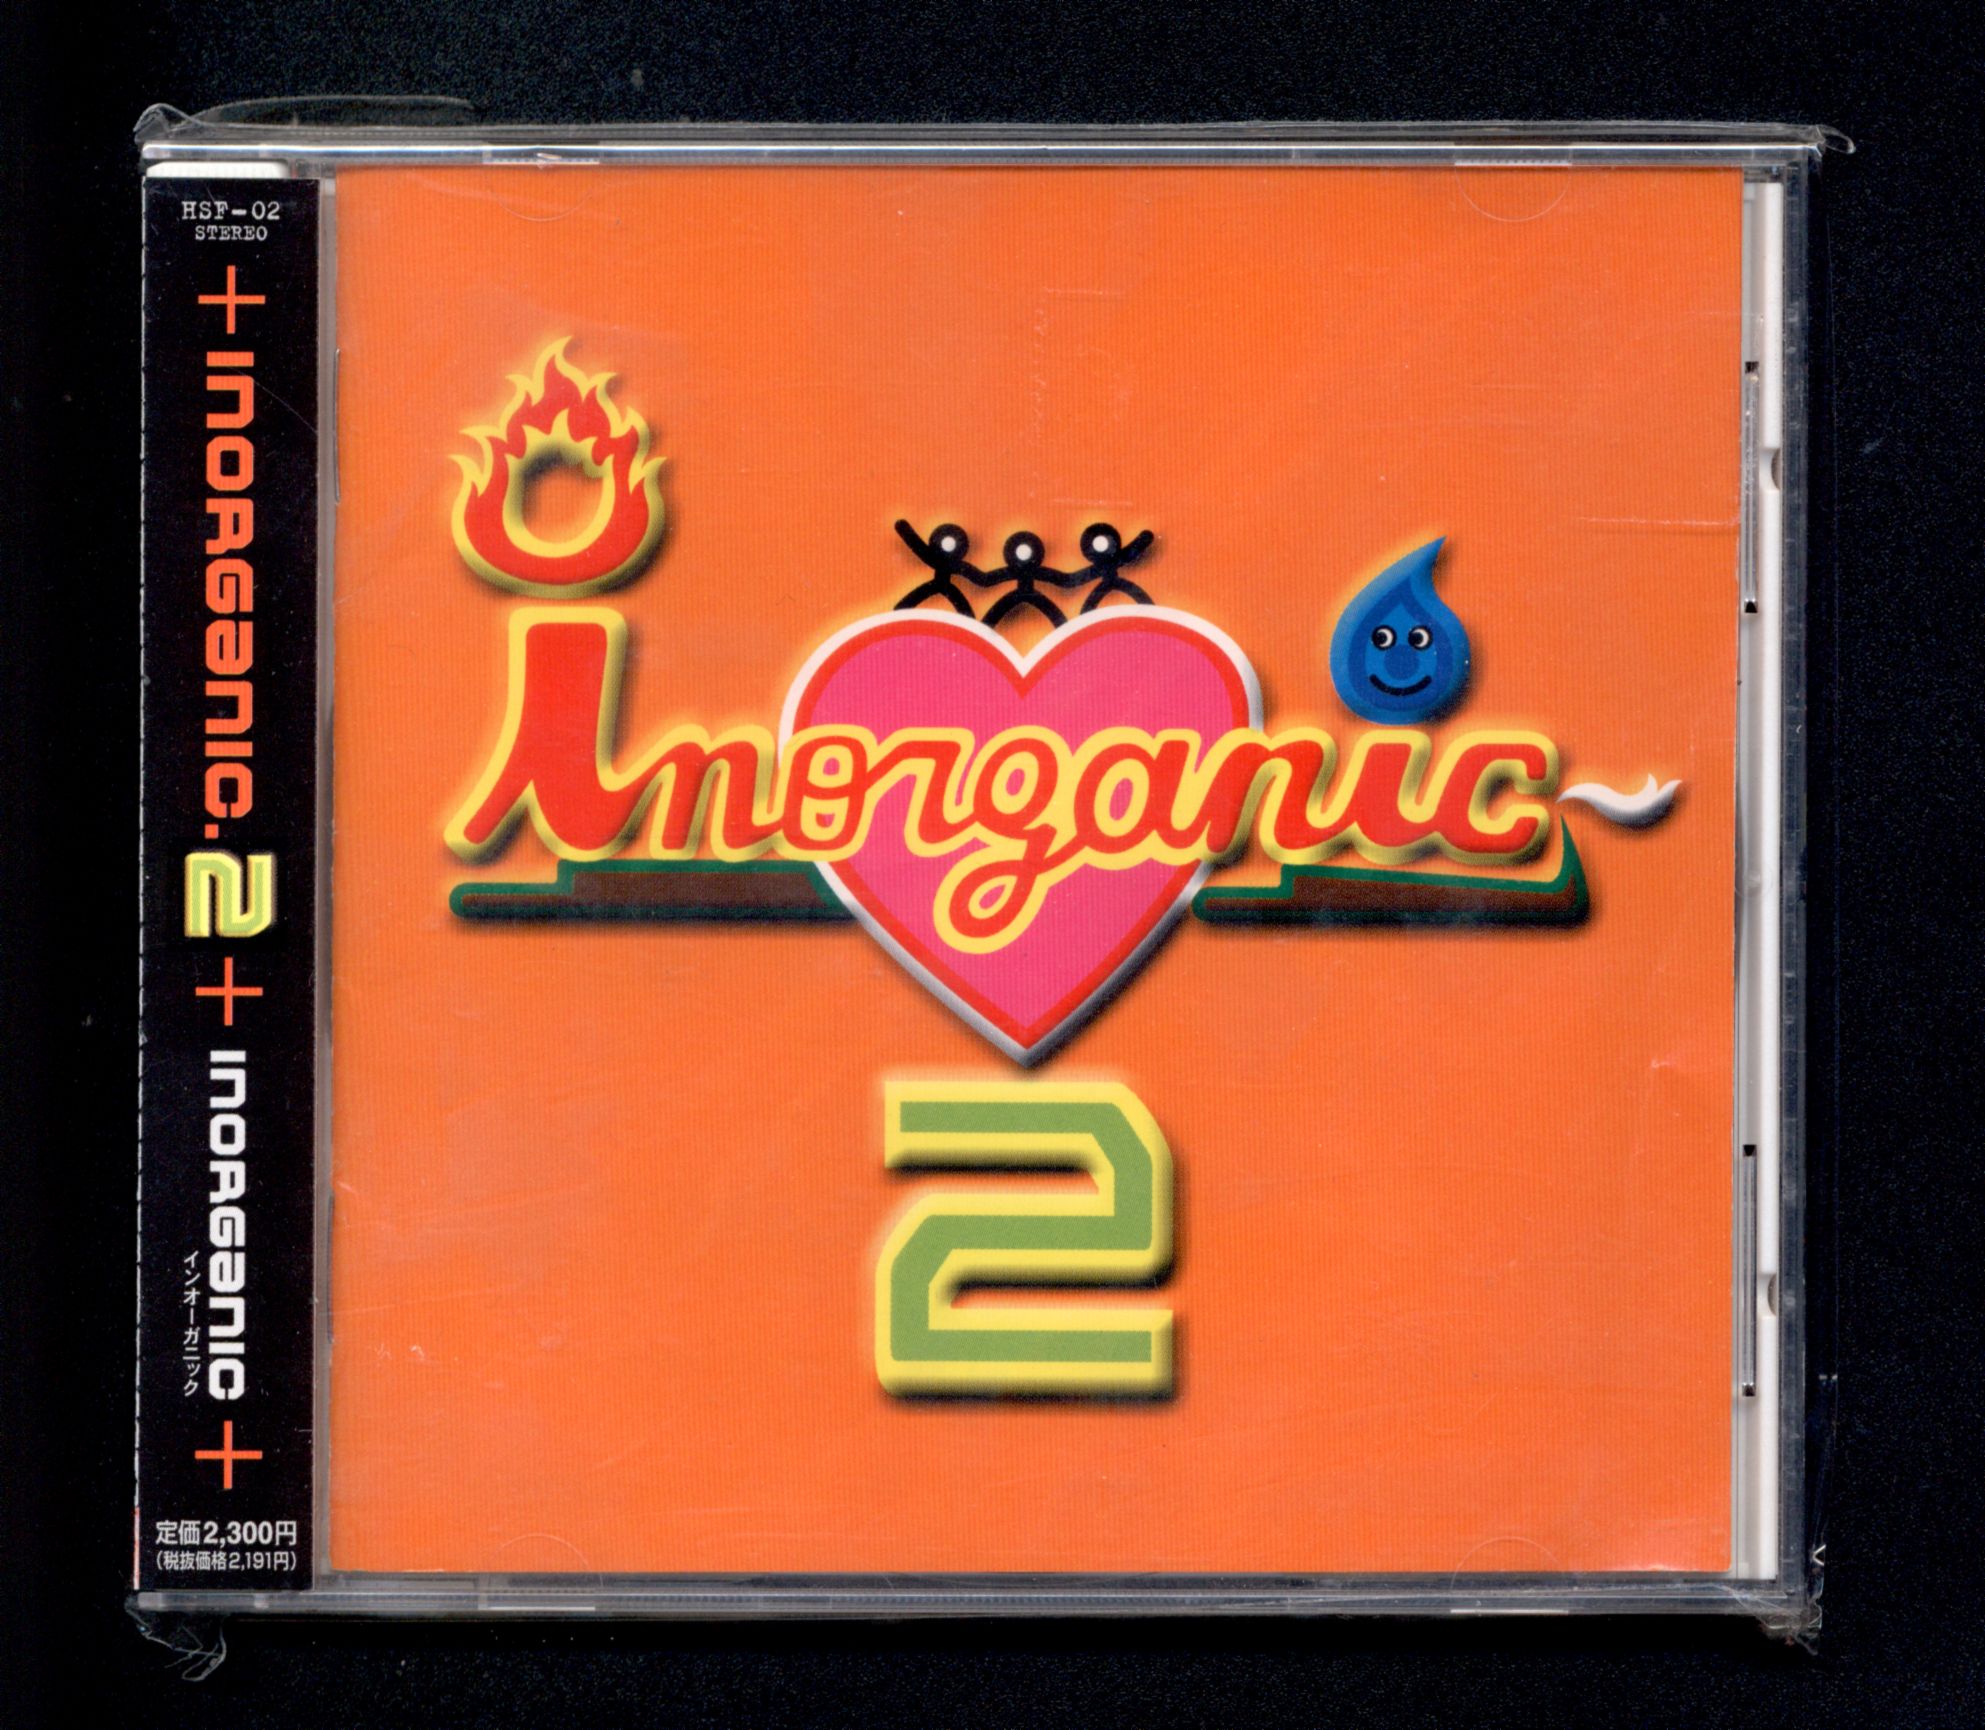 成田昭次 インオーガニック / INORGANIC 2 [CD] - 邦楽